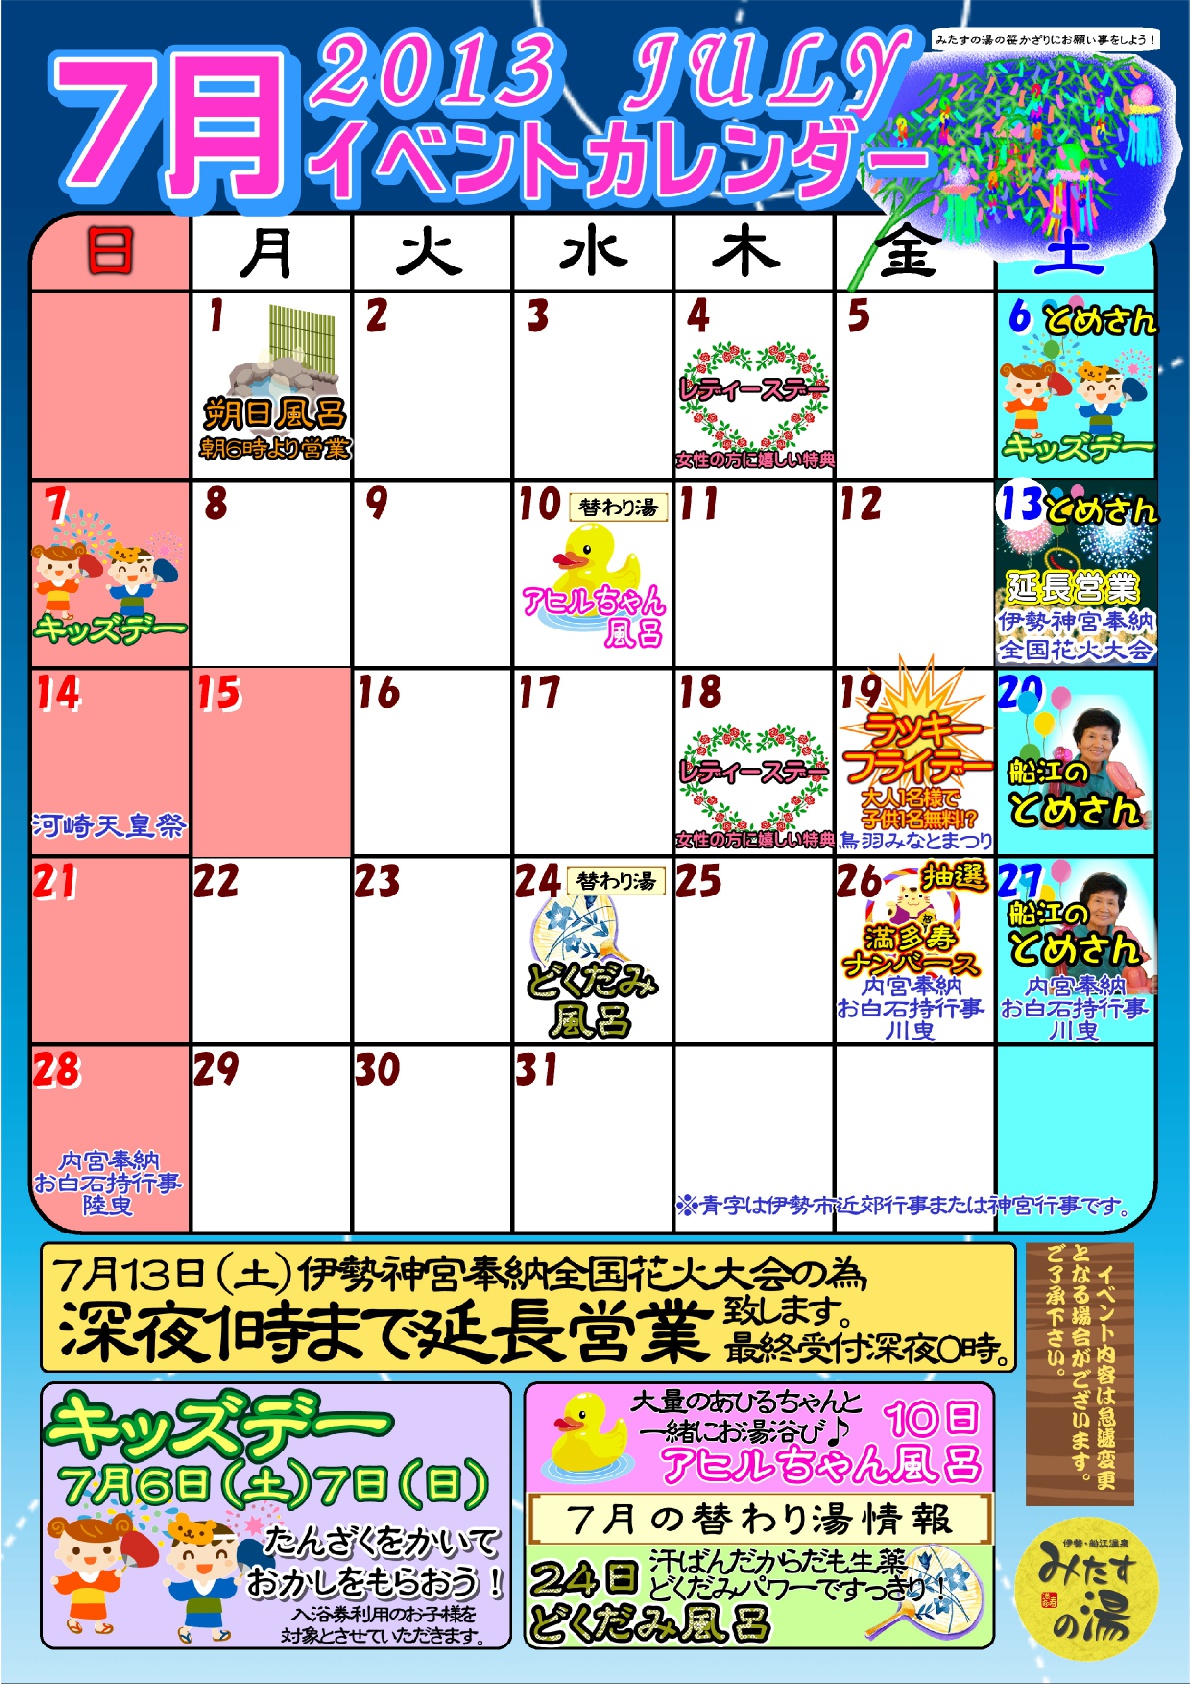 13年7月のイベントカレンダー 三重県伊勢市のスーパー銭湯 伊勢 船江温泉 みたすの湯